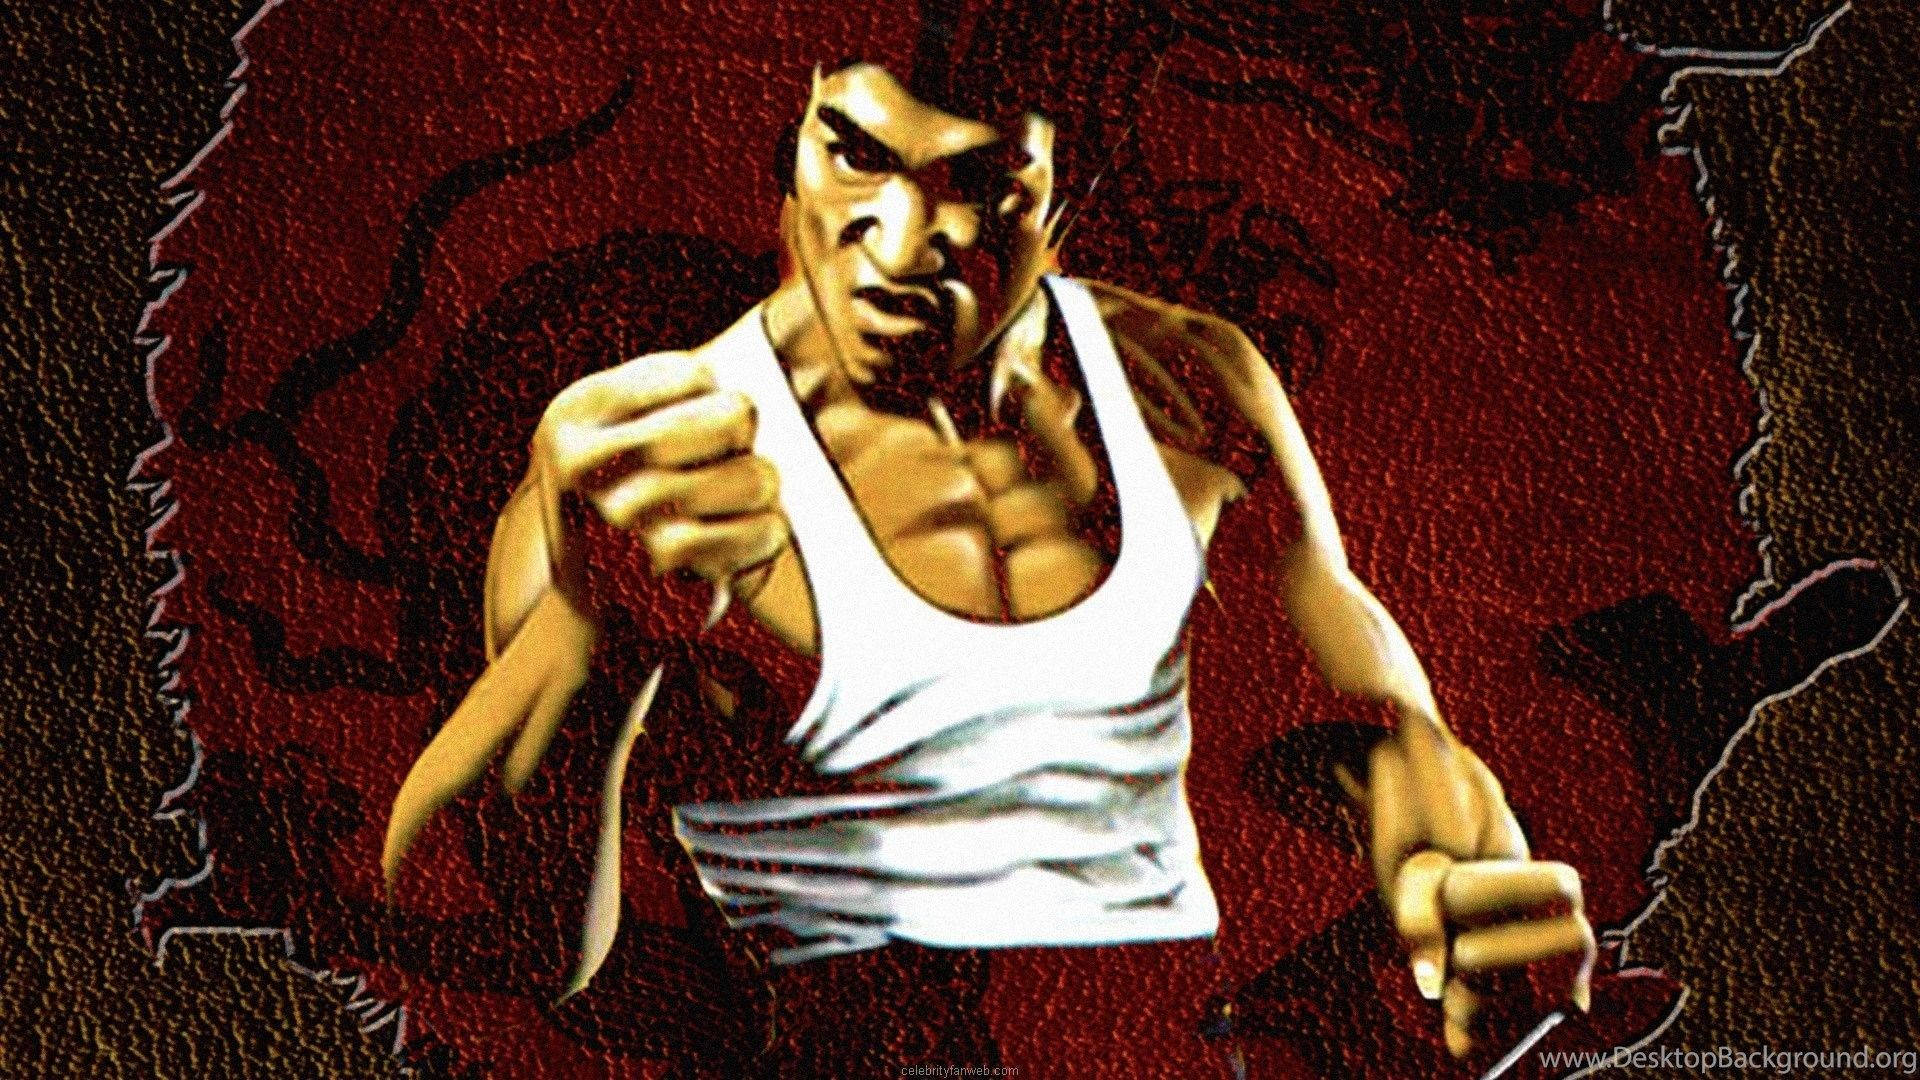 Bruce Lee Dragon Art Desktop Background